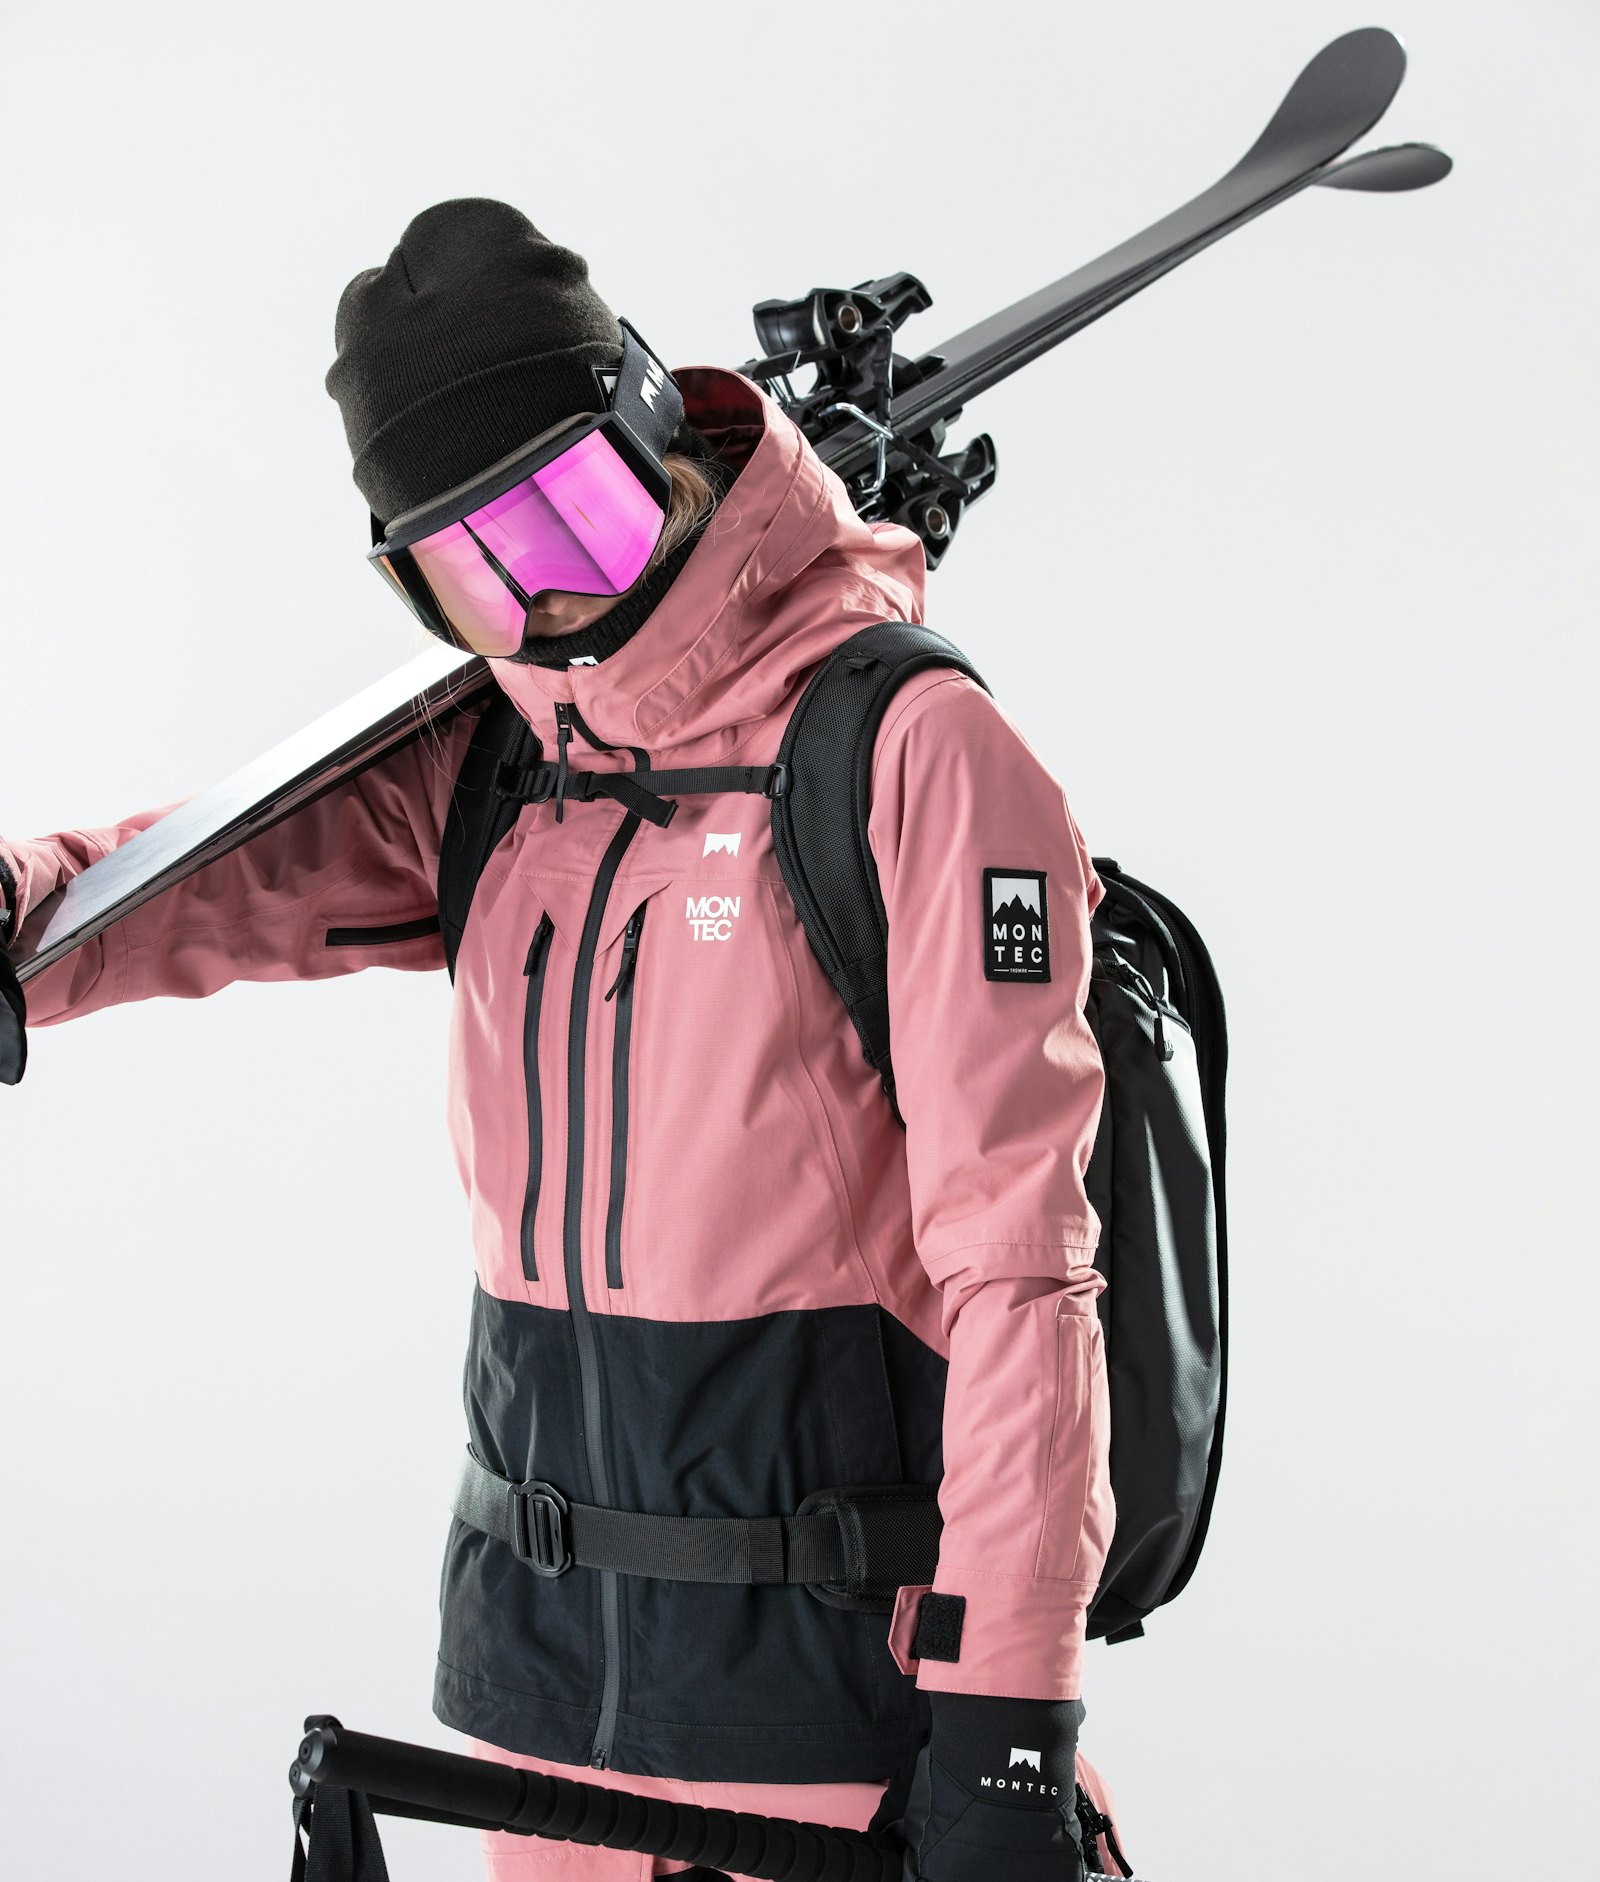 Moss W 2020 Ski jas Dames Pink/Black